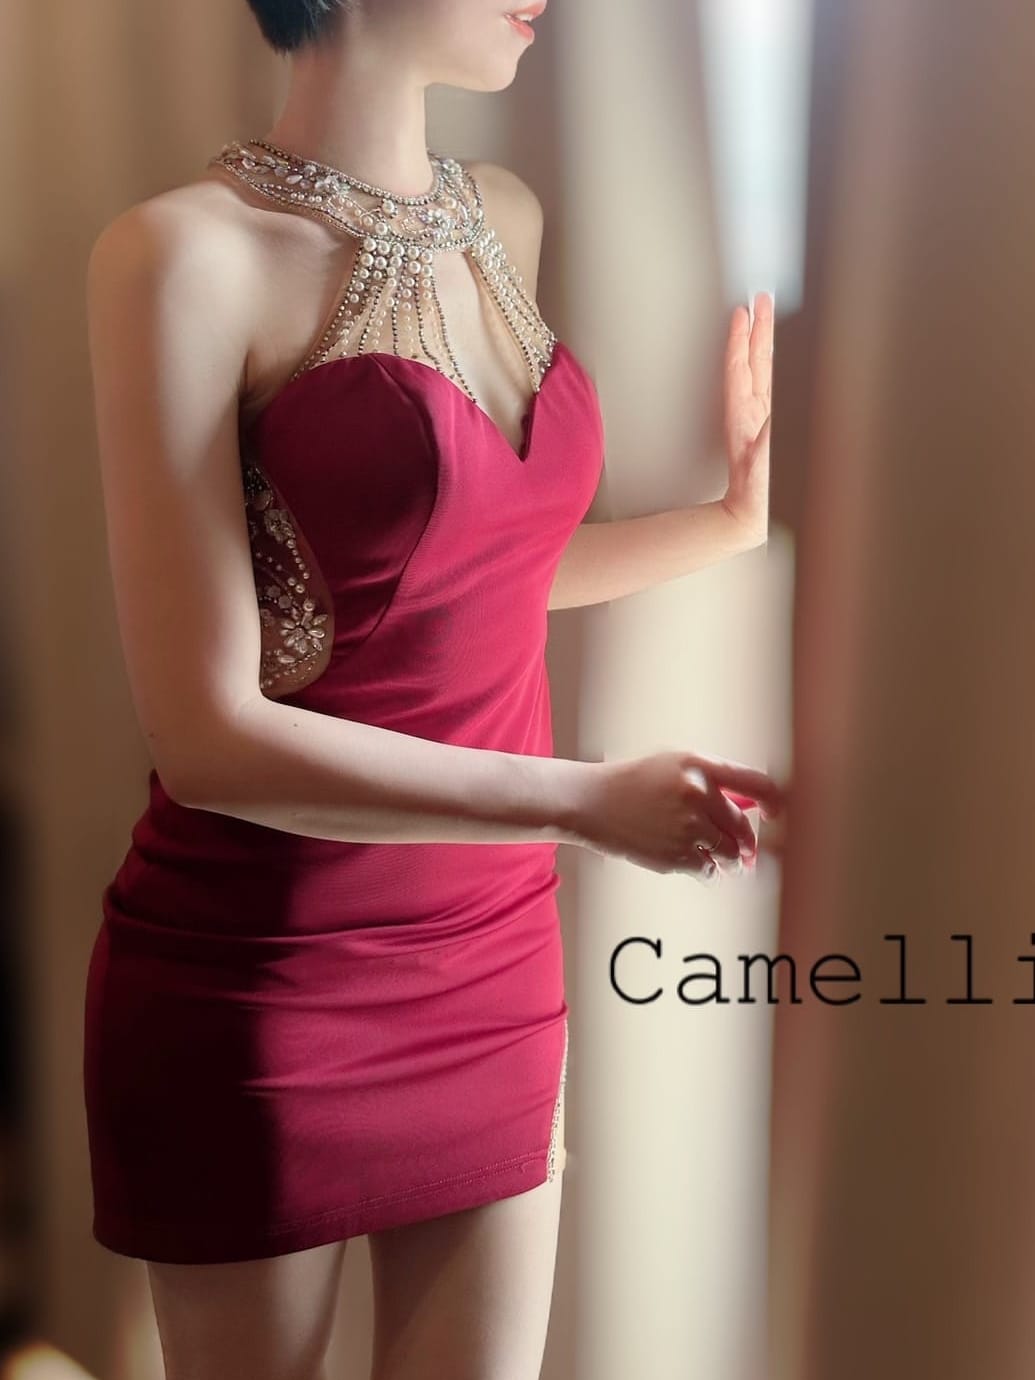 りょう | Camellia-カメリア-